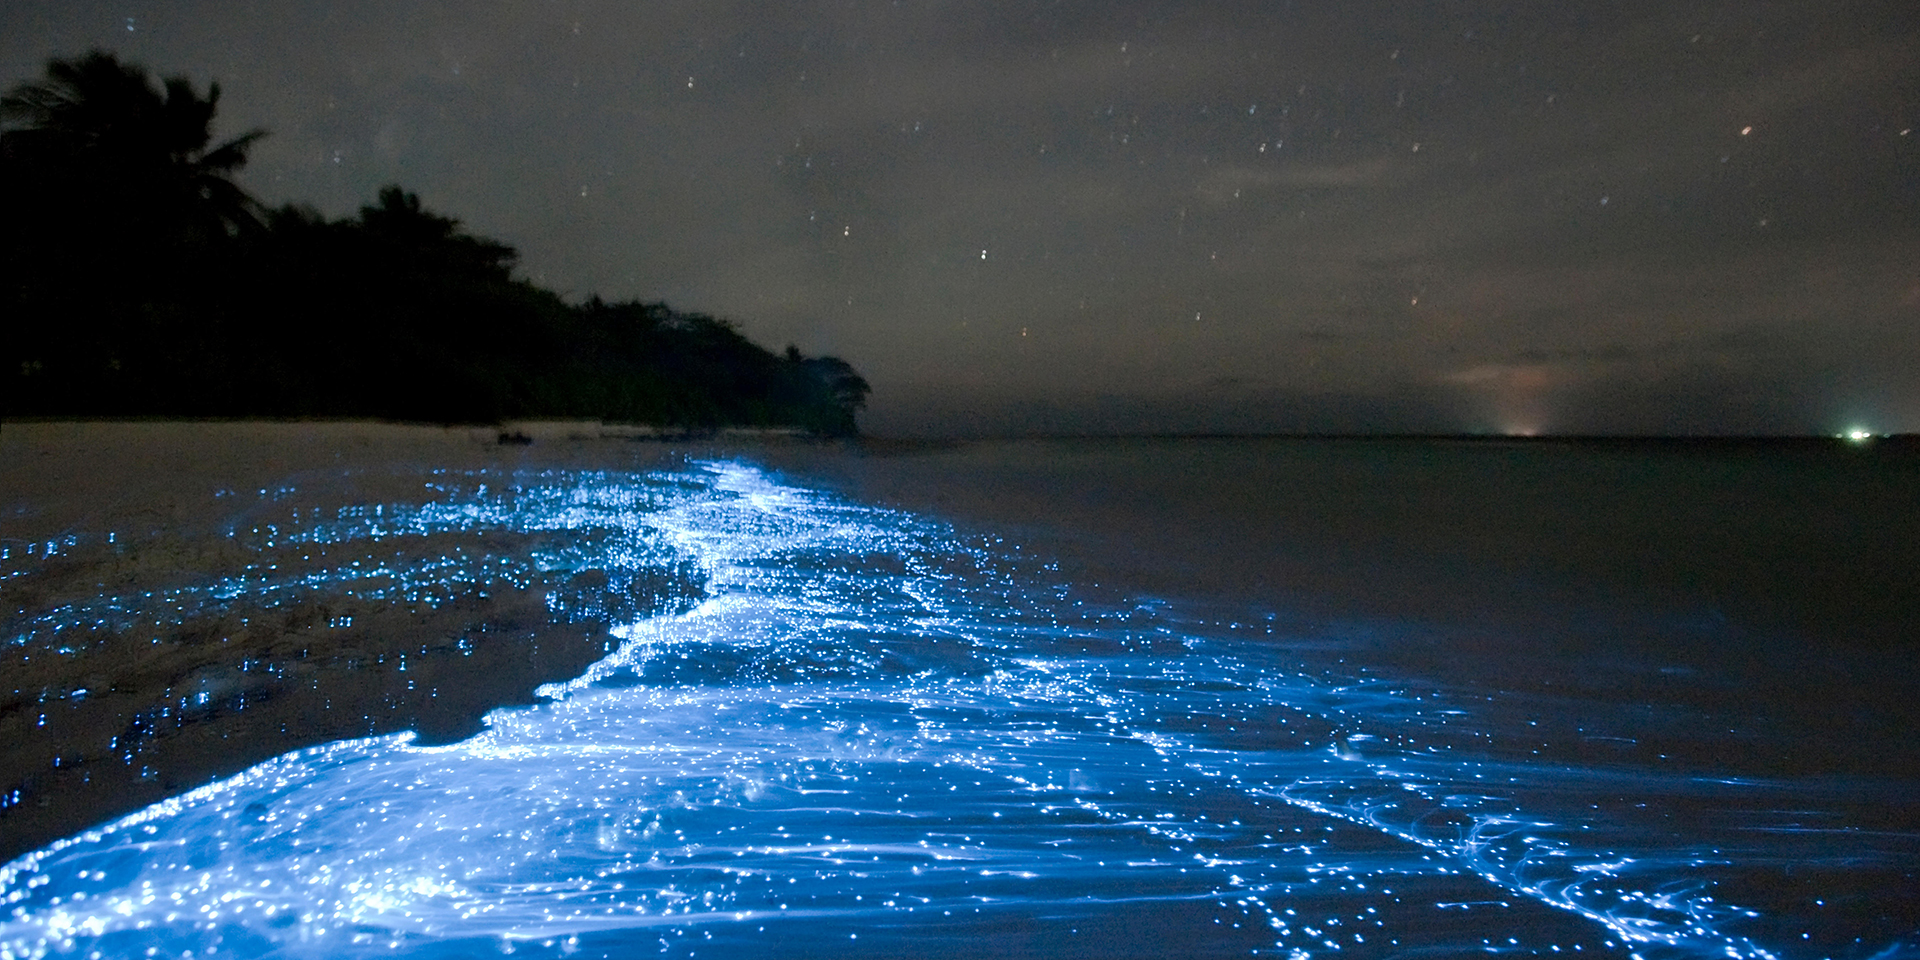 luces resplandecientes de la bahía bioluminiscente